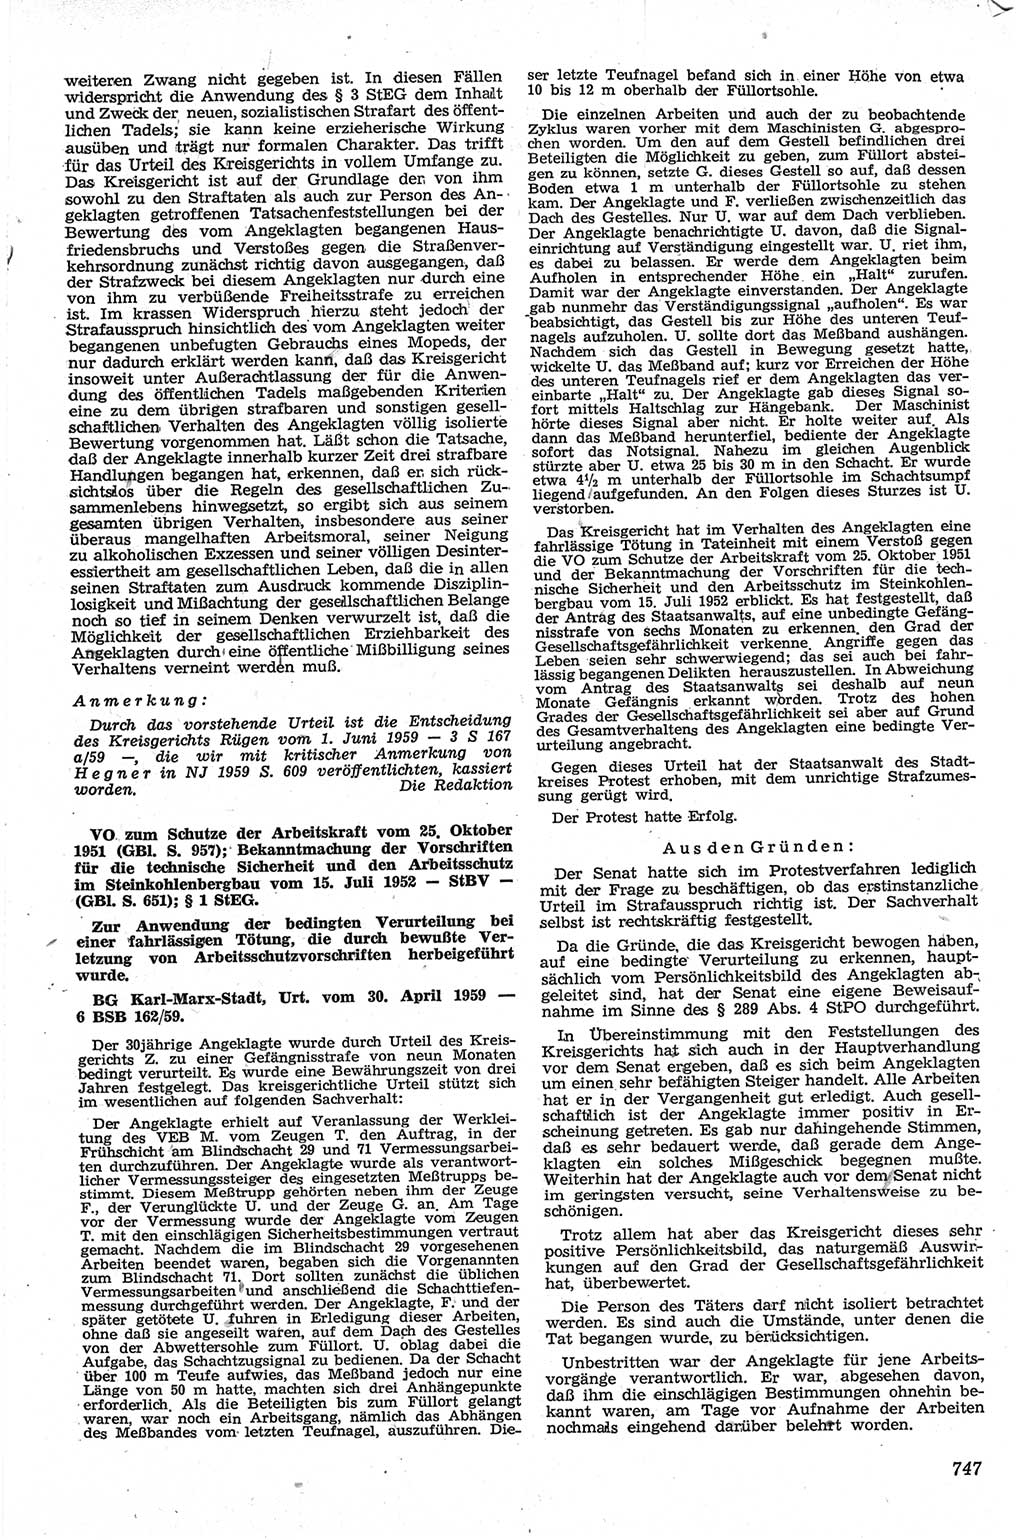 Neue Justiz (NJ), Zeitschrift für Recht und Rechtswissenschaft [Deutsche Demokratische Republik (DDR)], 13. Jahrgang 1959, Seite 747 (NJ DDR 1959, S. 747)